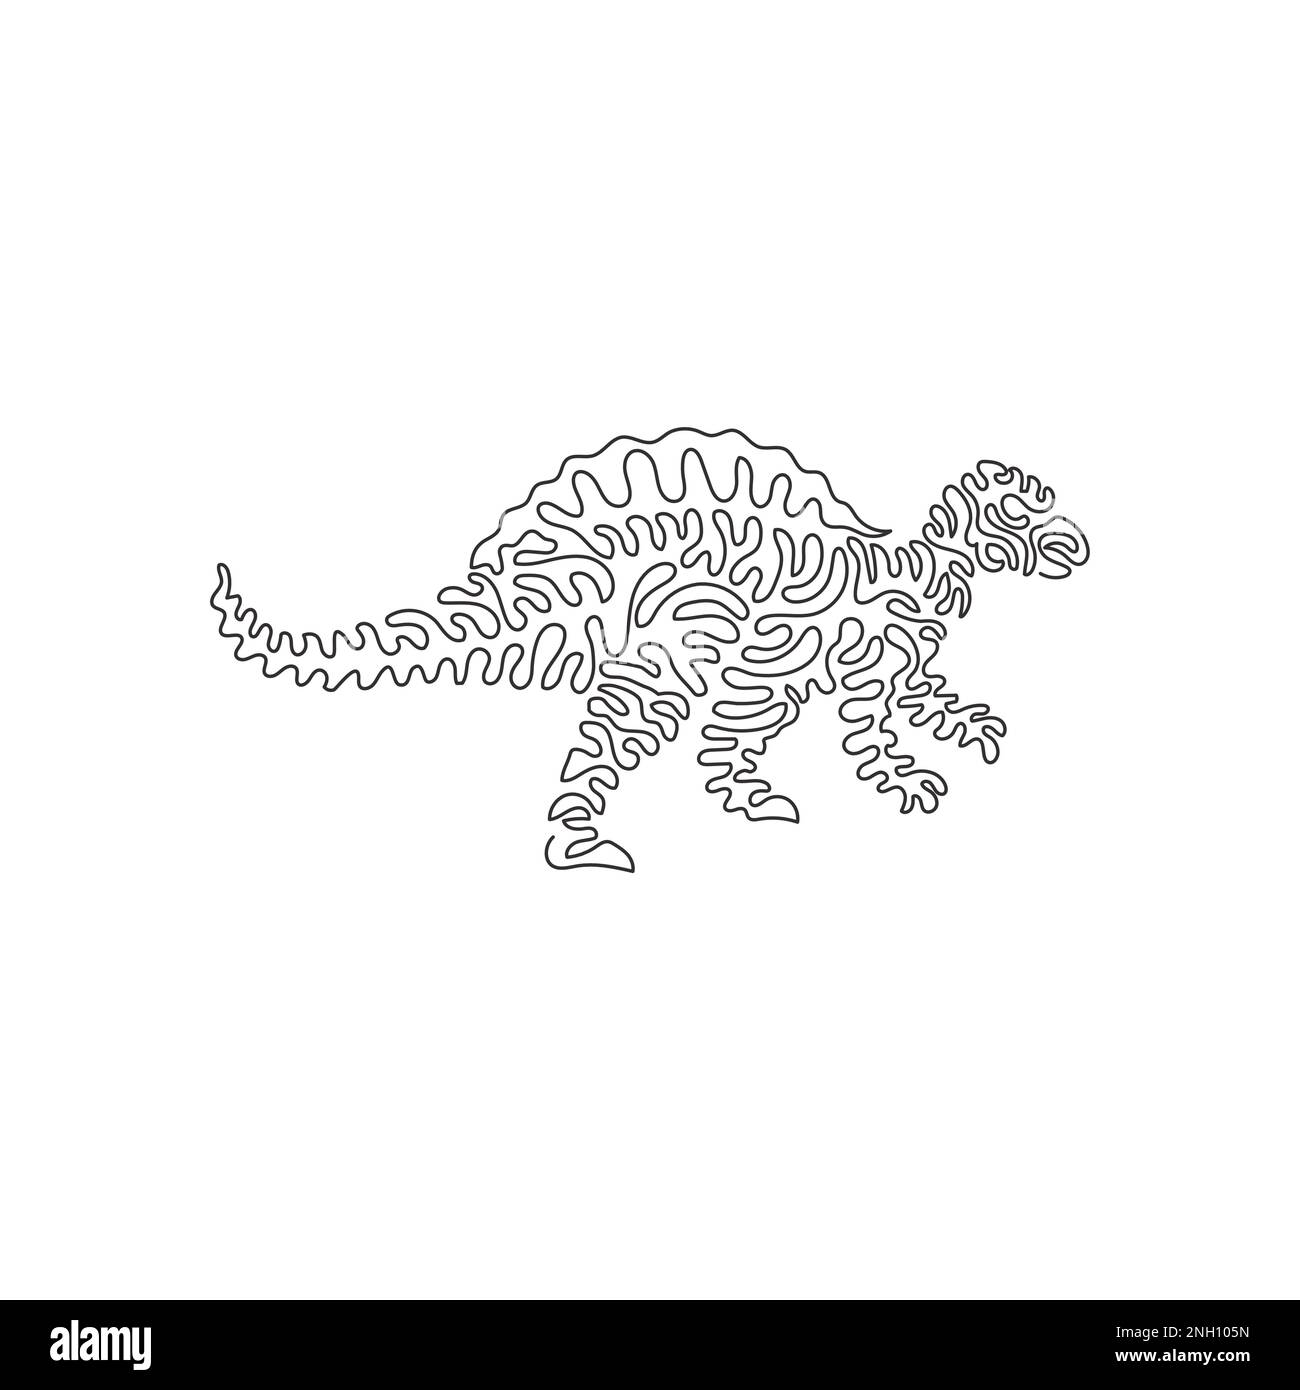 Dessin continu d'une ligne de l'art abstrait du lézard de la colonne vertébrale Illustration d'un vecteur de trait modifiable d'une seule ligne de spinosaurus grands carnivores Illustration de Vecteur